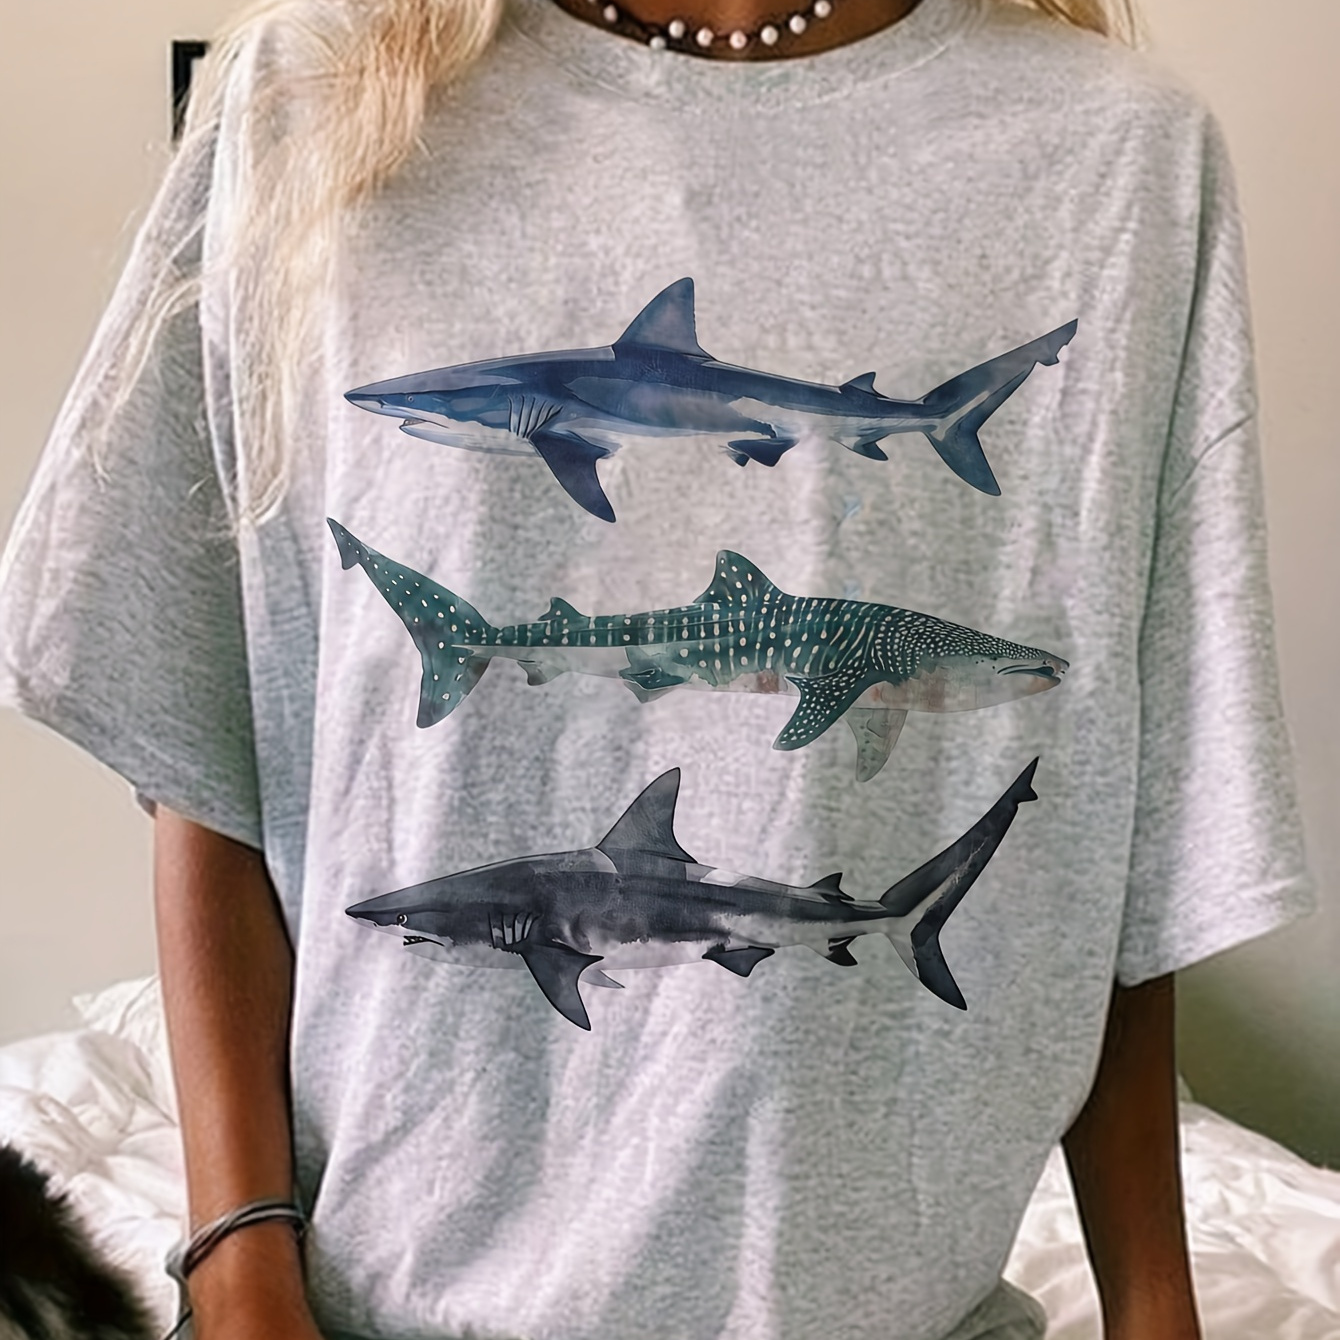 

Simple Shark Print T-shirt, Crew Neck Short Sleeve Women's T-shirt For Summer Beach Vacation Tops, Women's Clothing